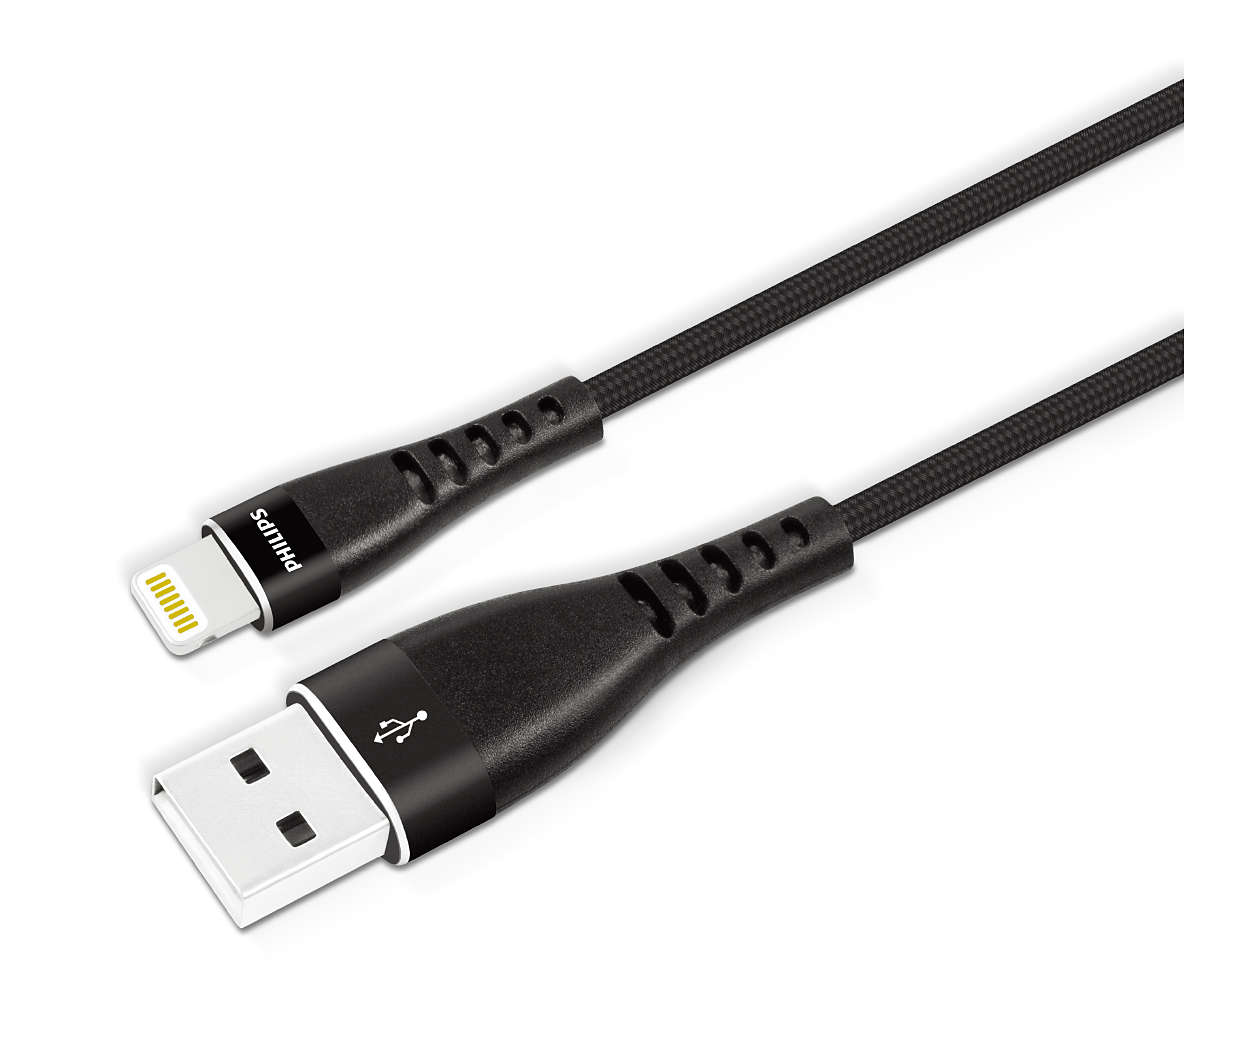 Kaliteli ve örgülü USB-A - Lightning kablo